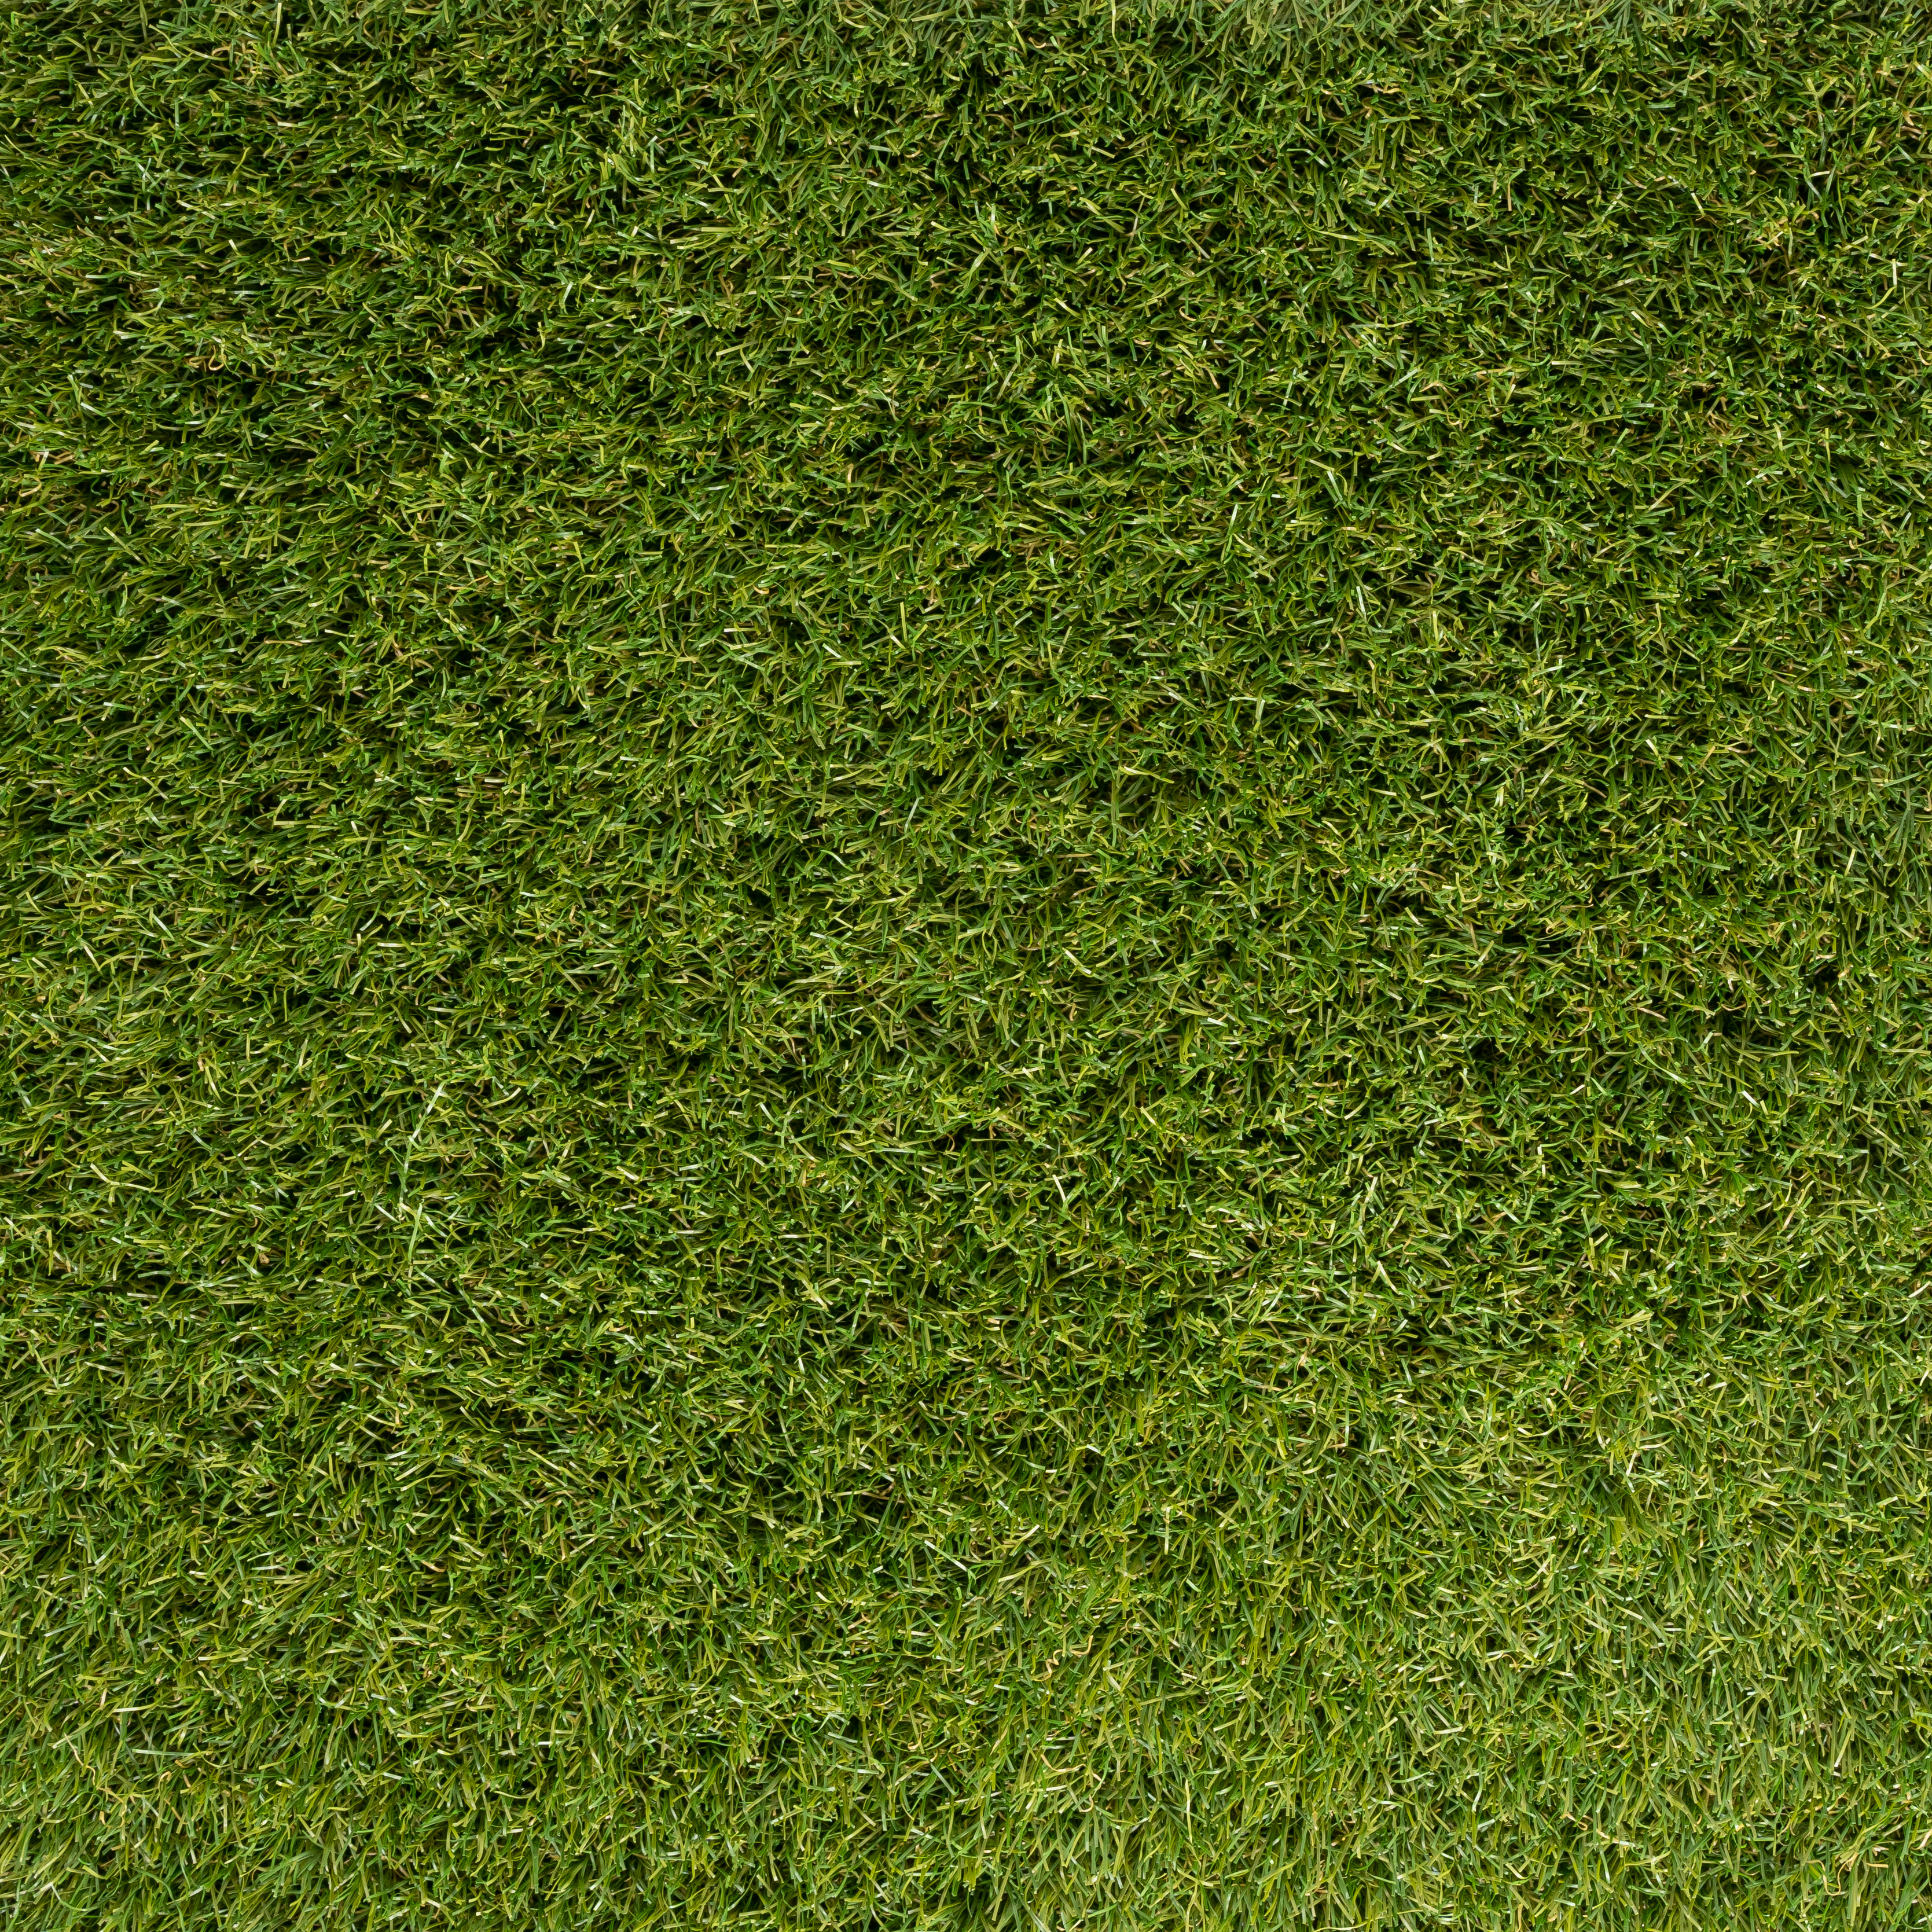  Fertilize Grass  thumbnail